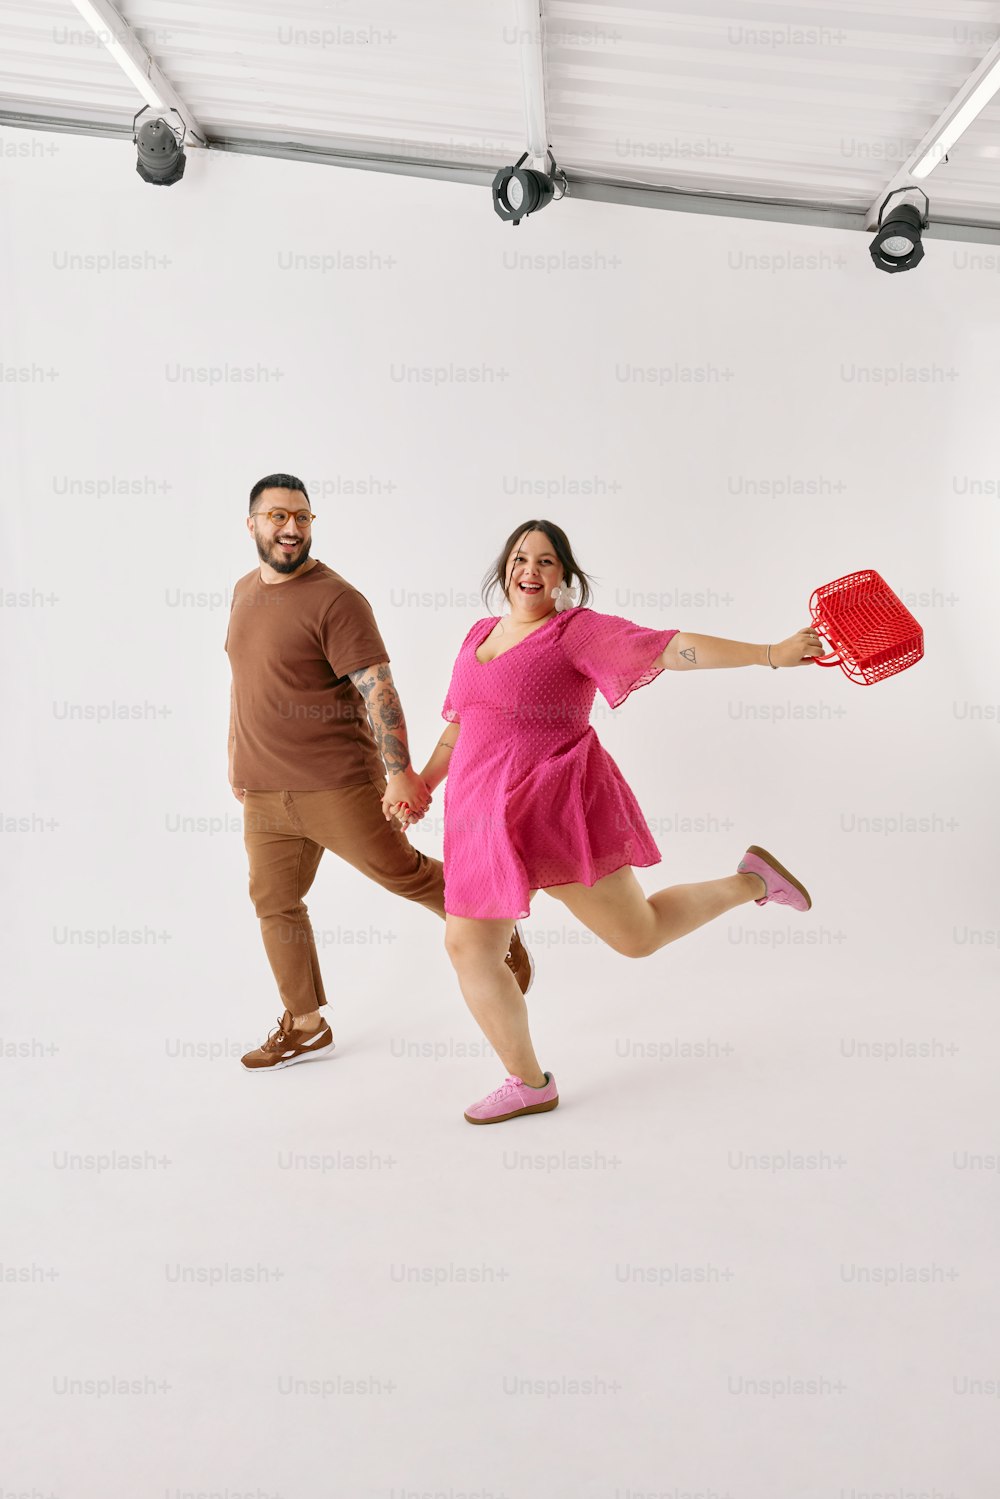 un homme et une femme tenant un frisbee rouge